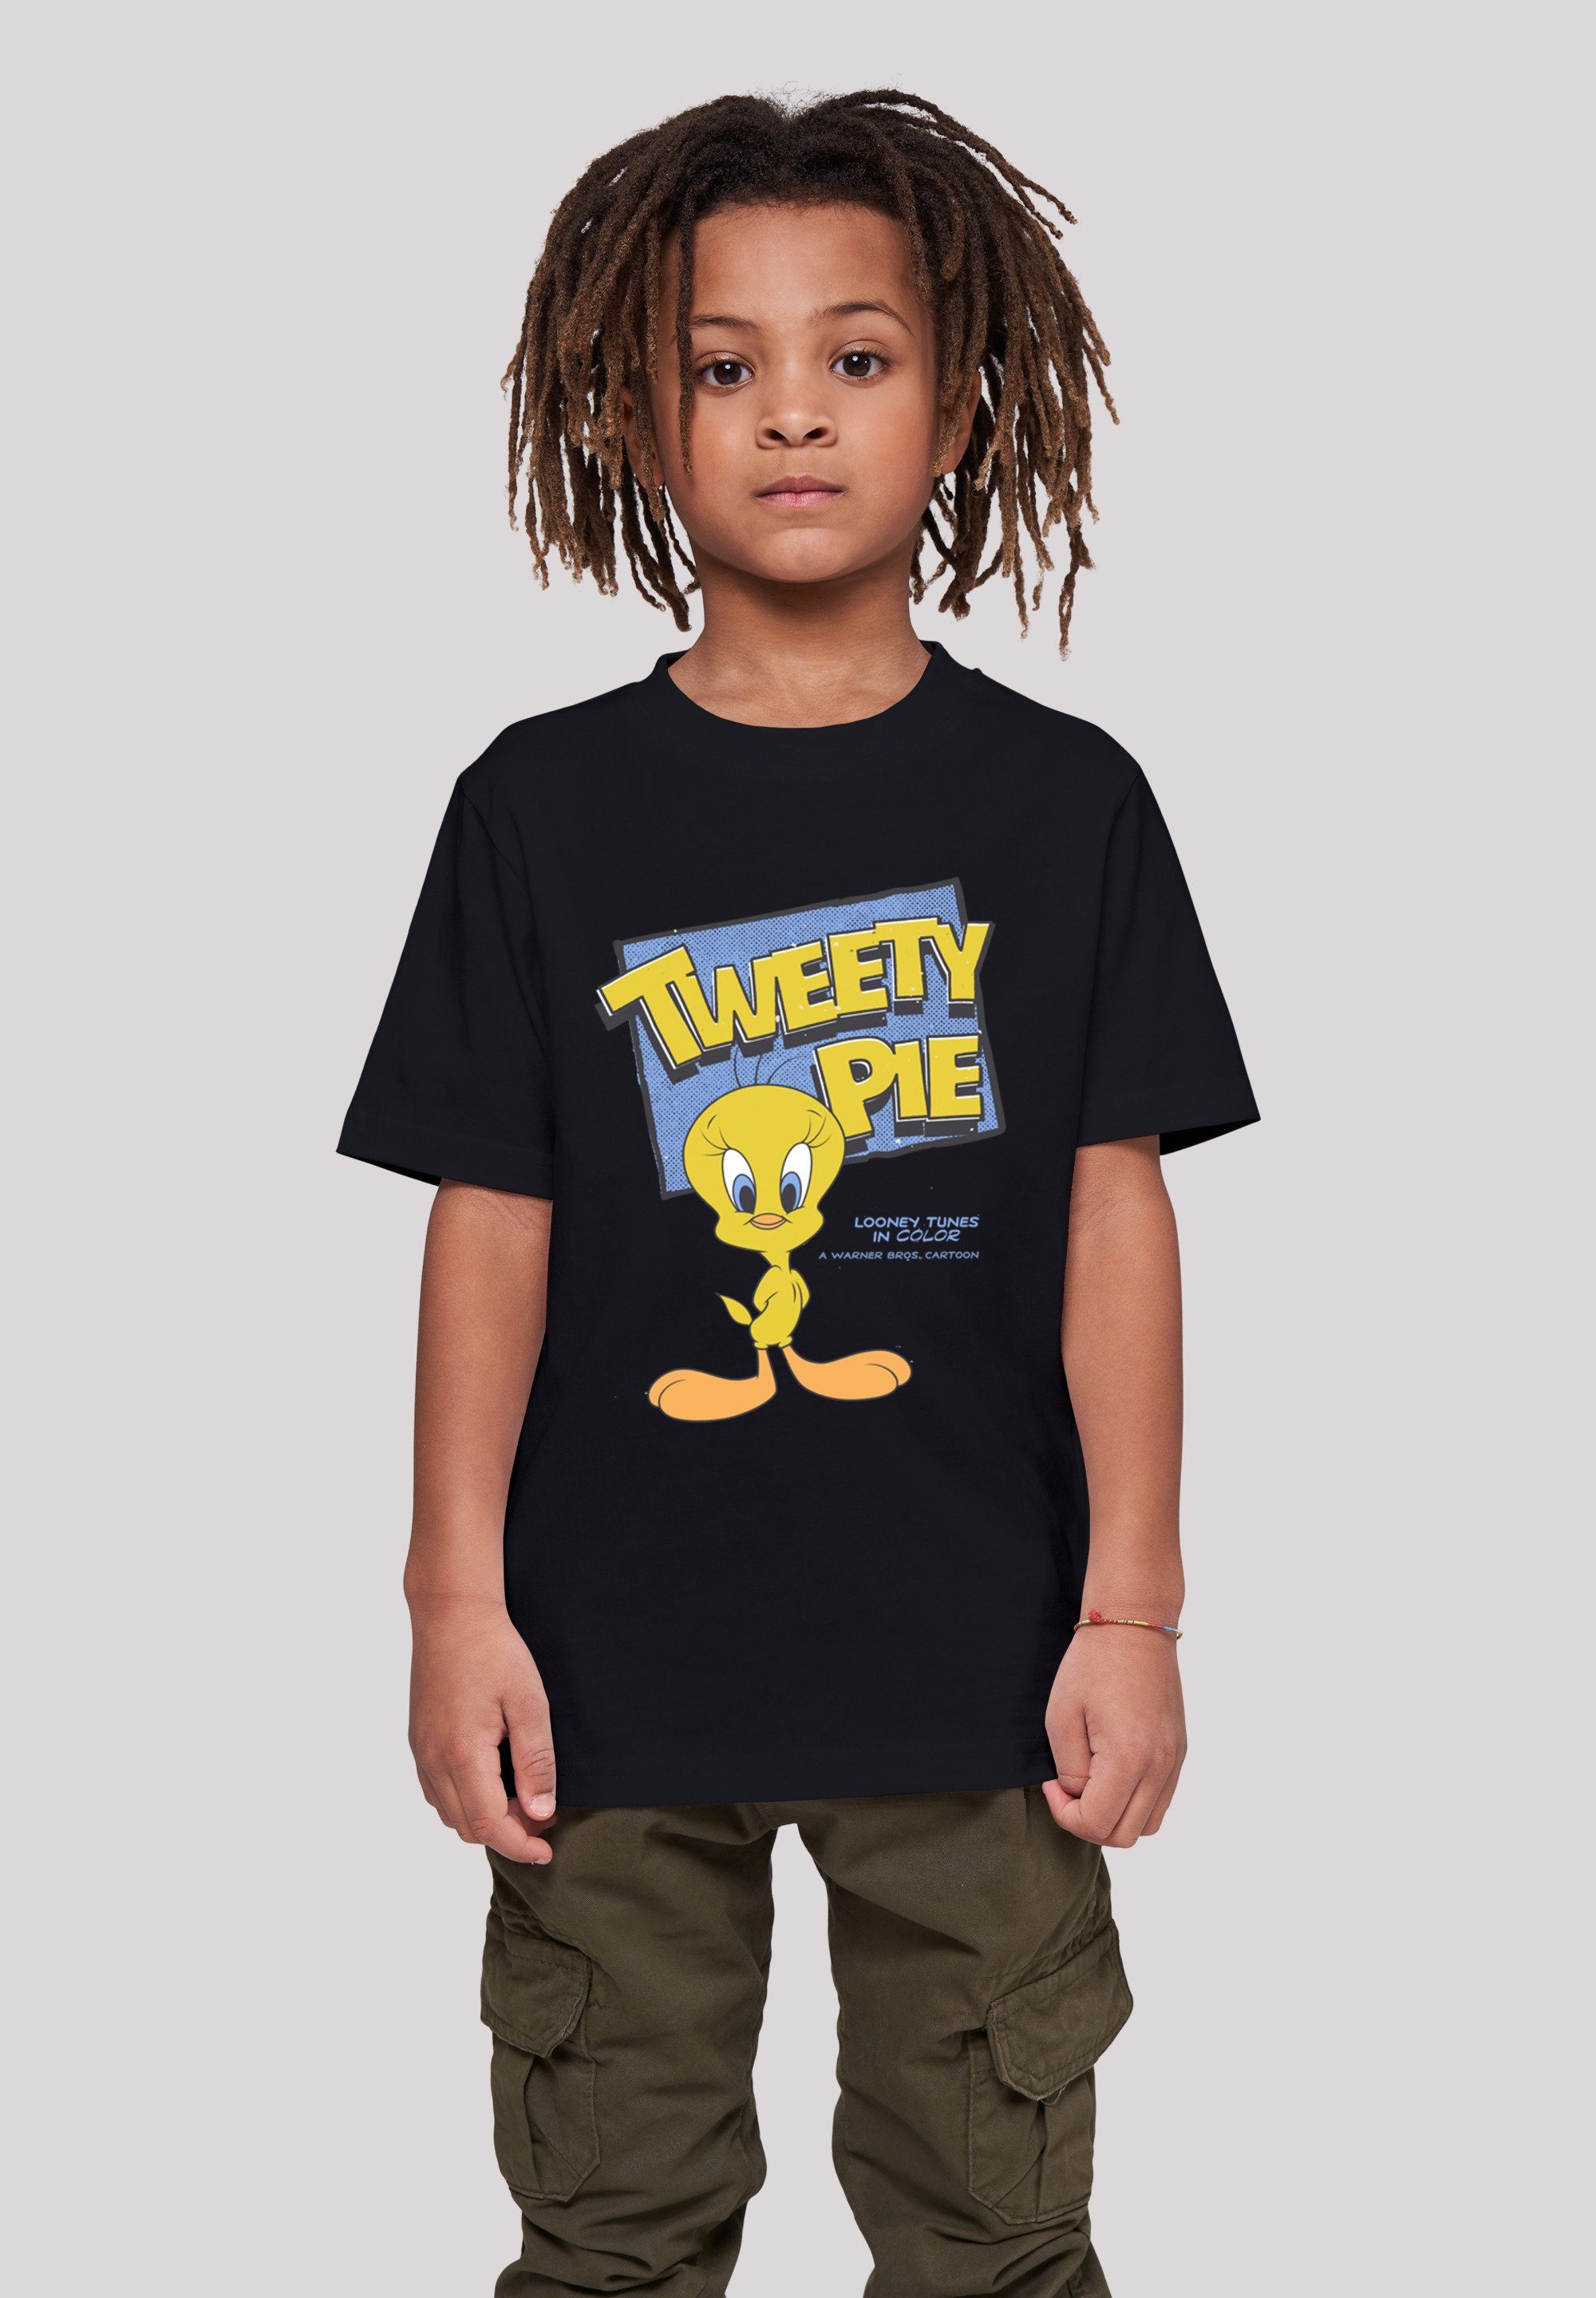 F4NT4STIC T-Shirt Looney Tunes Classic Tweety Pie Unisex Kinder,Premium Merch,Jungen,Mädchen,Bedruckt schwarz